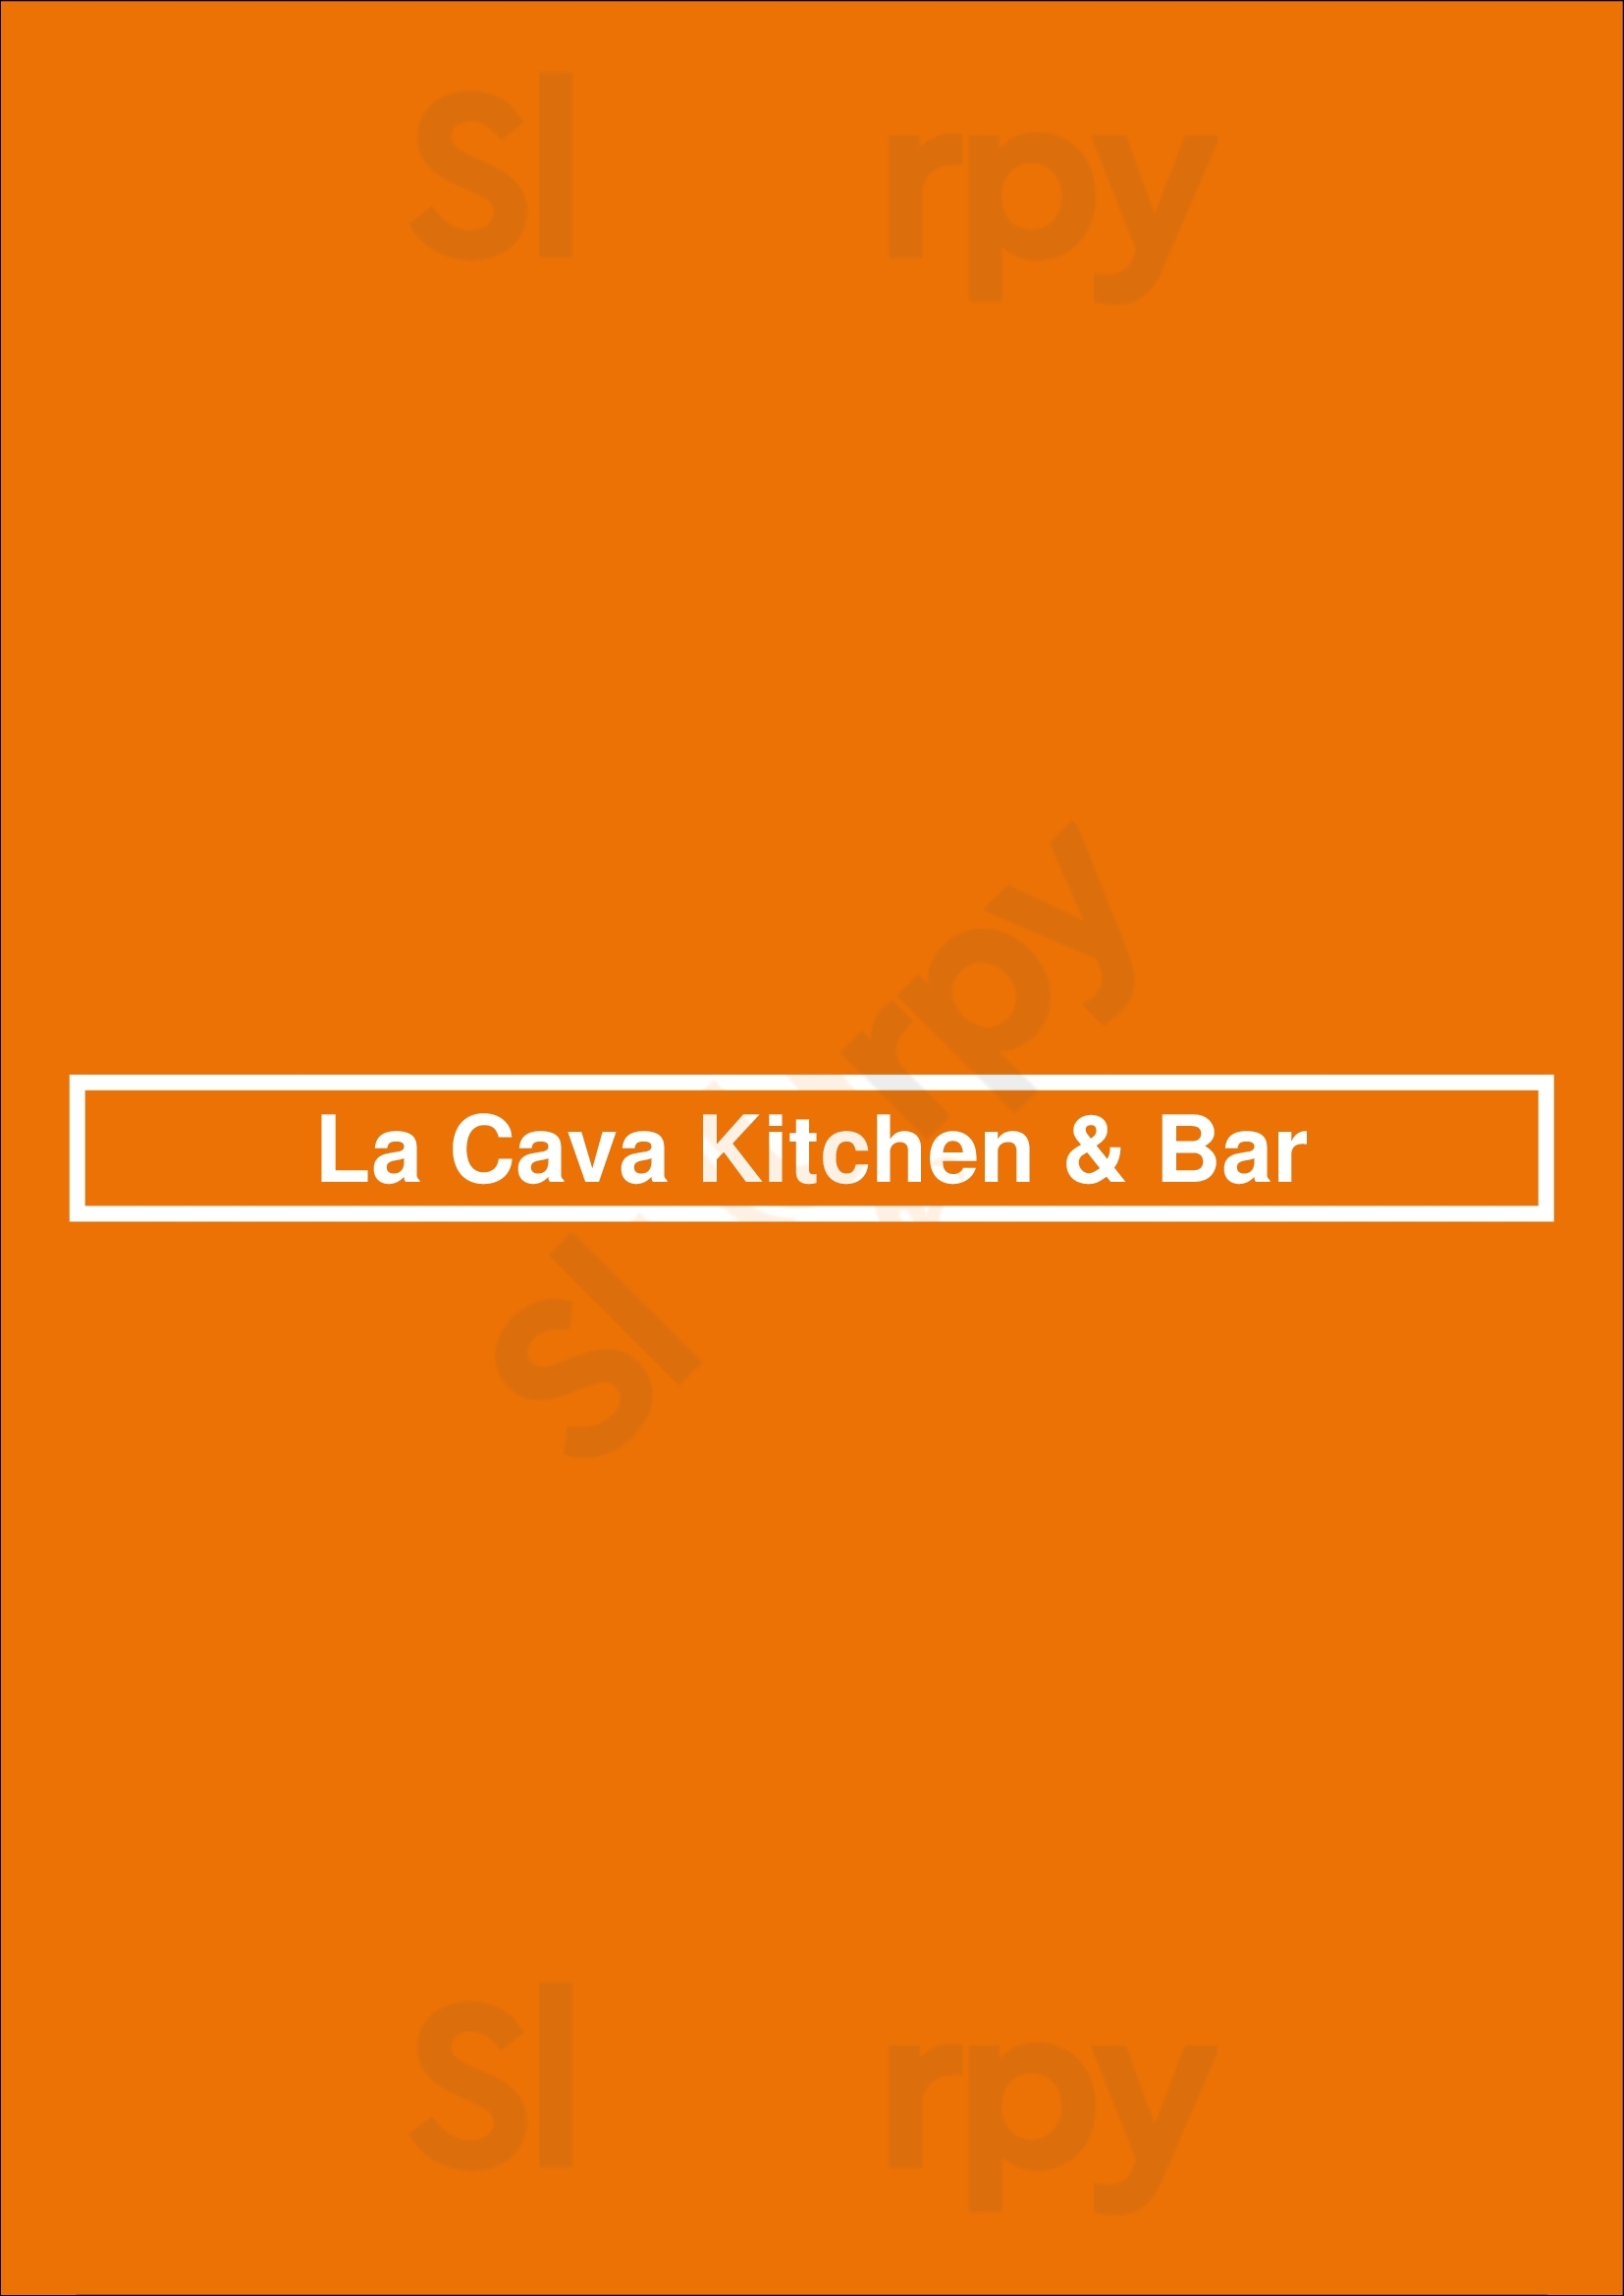 La Cava Kitchen & Bar Punta Cana Menu - 1